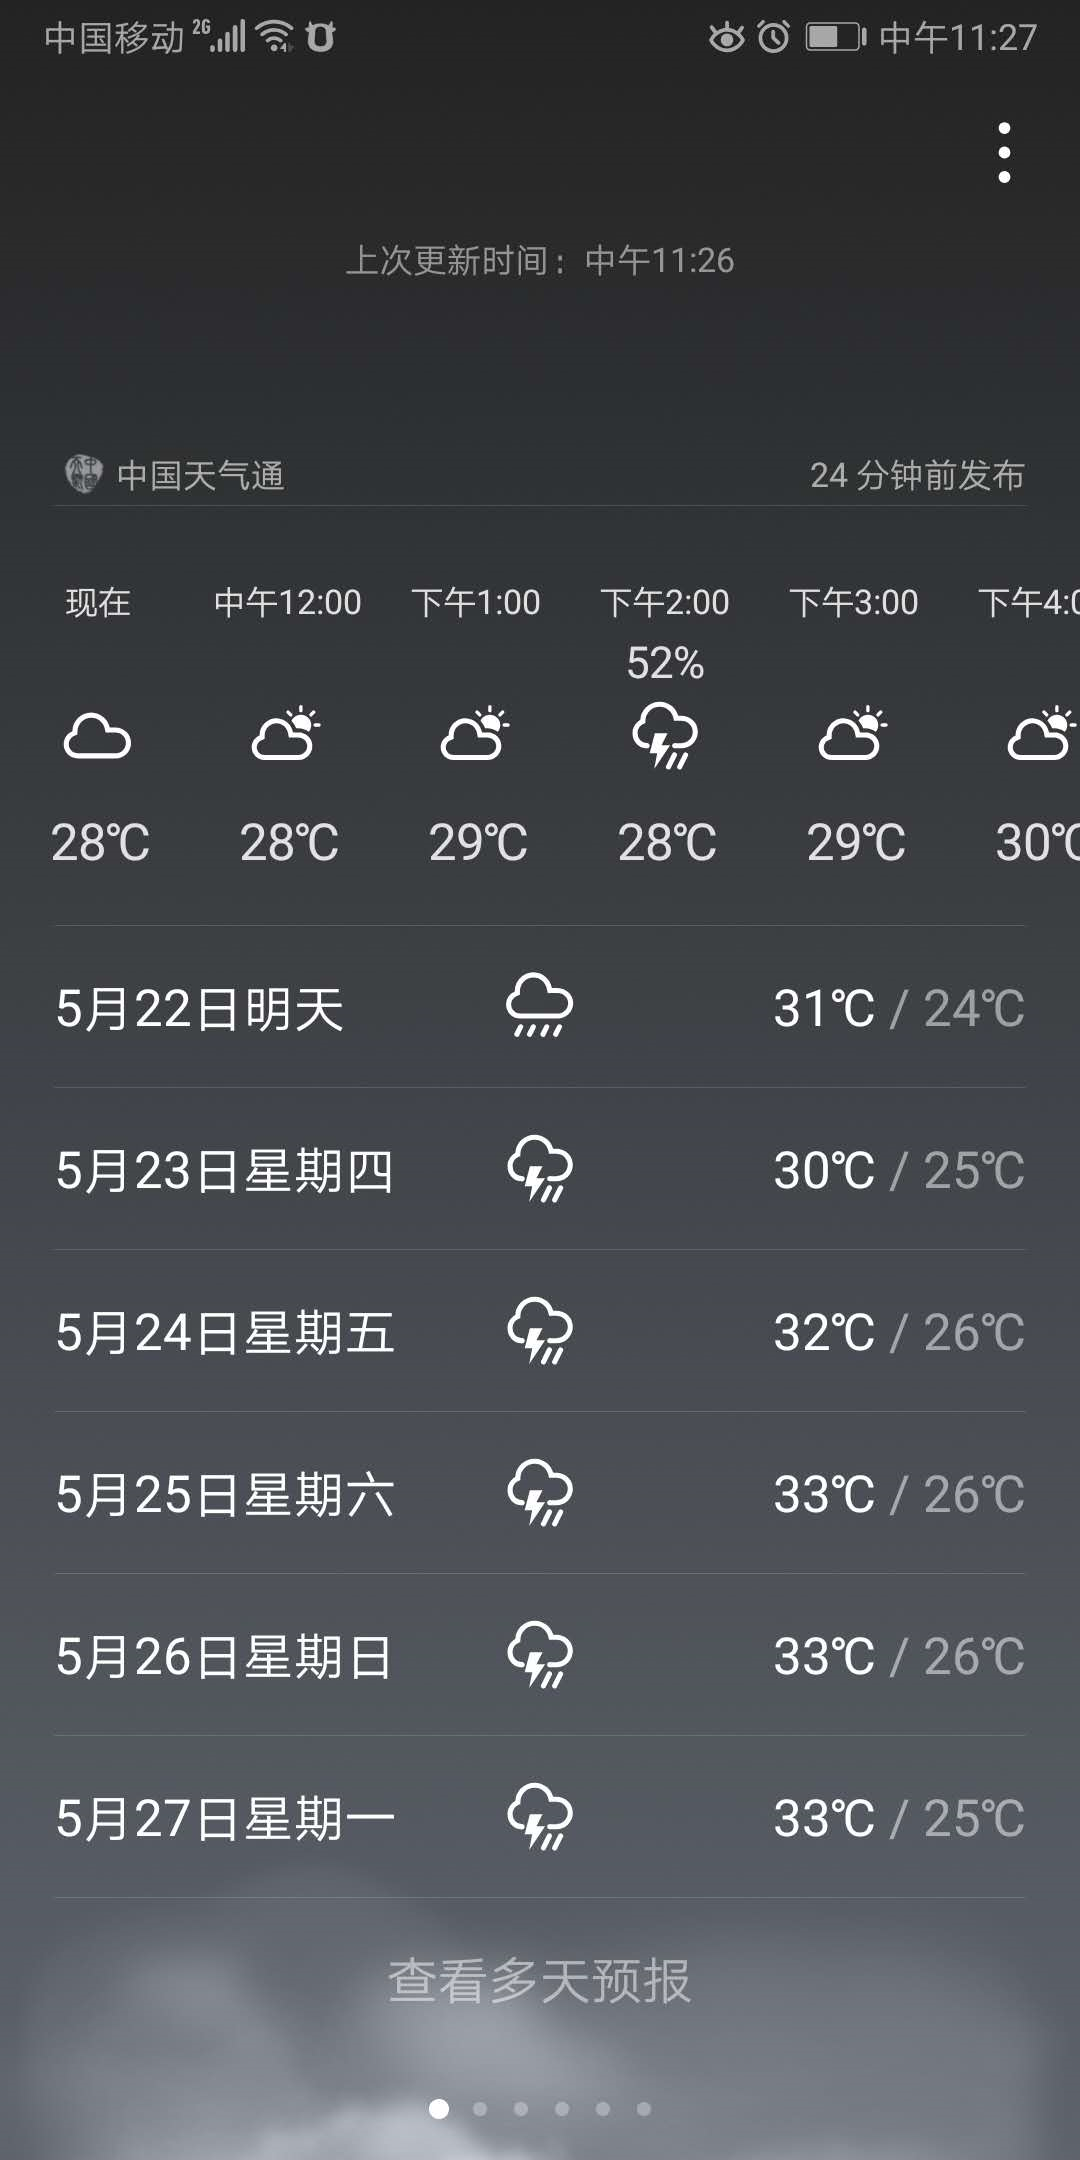 5月23日到5月26日 广州适合旅游么 天气预报雷阵雨 会一直下么 马蜂窝